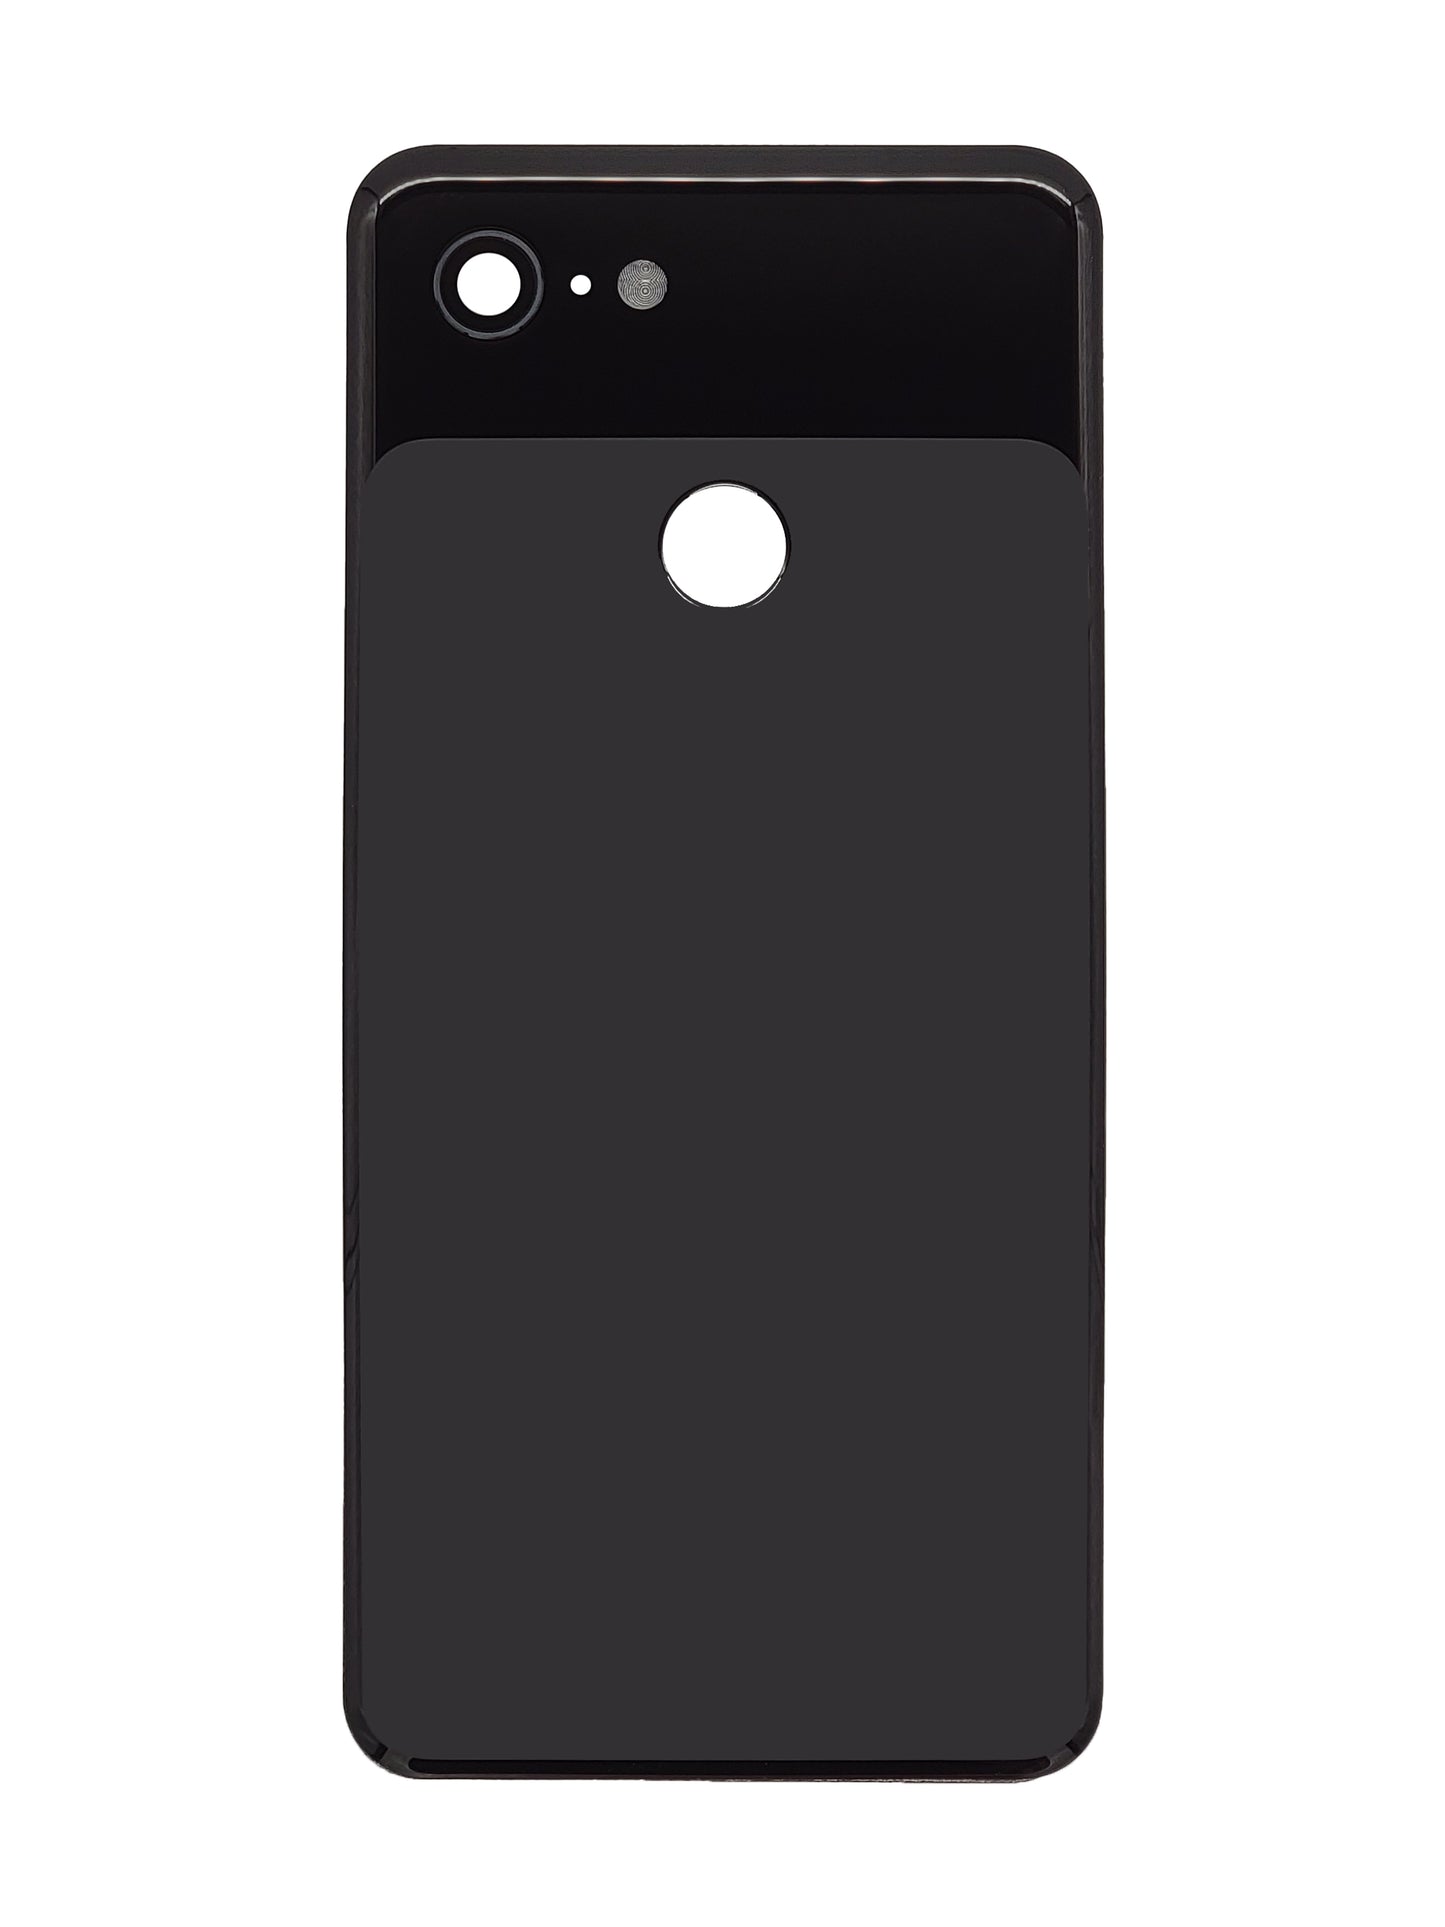 GOP Pixel 3 Back Cover (Black)